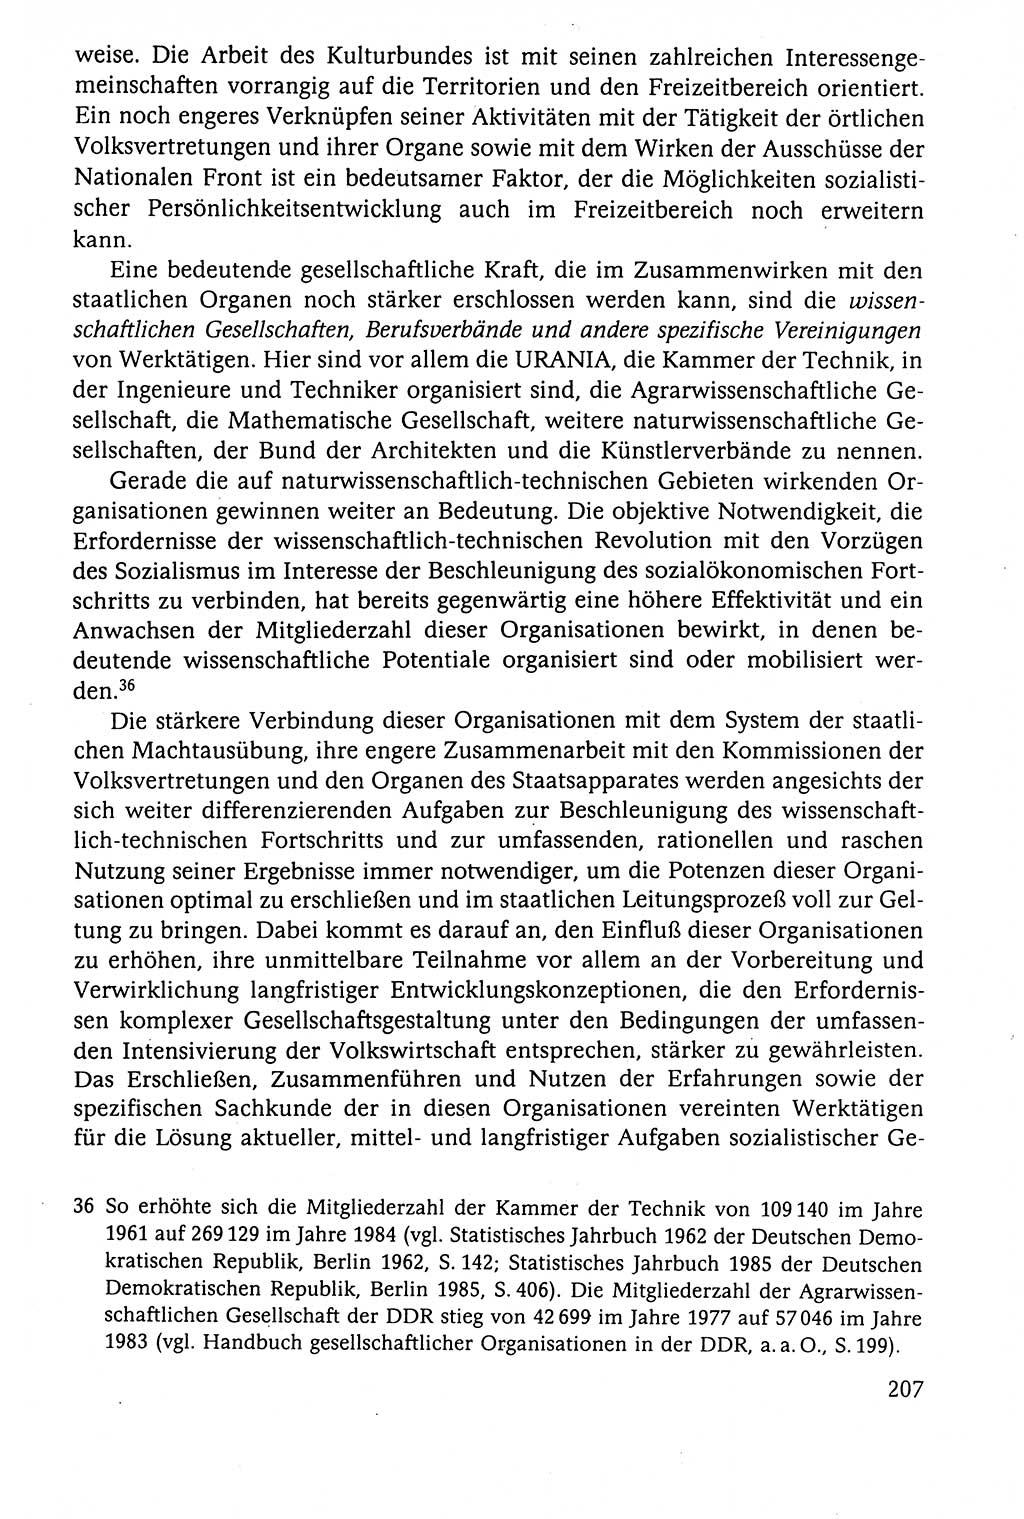 Der Staat im politischen System der DDR (Deutsche Demokratische Republik) 1986, Seite 207 (St. pol. Sys. DDR 1986, S. 207)